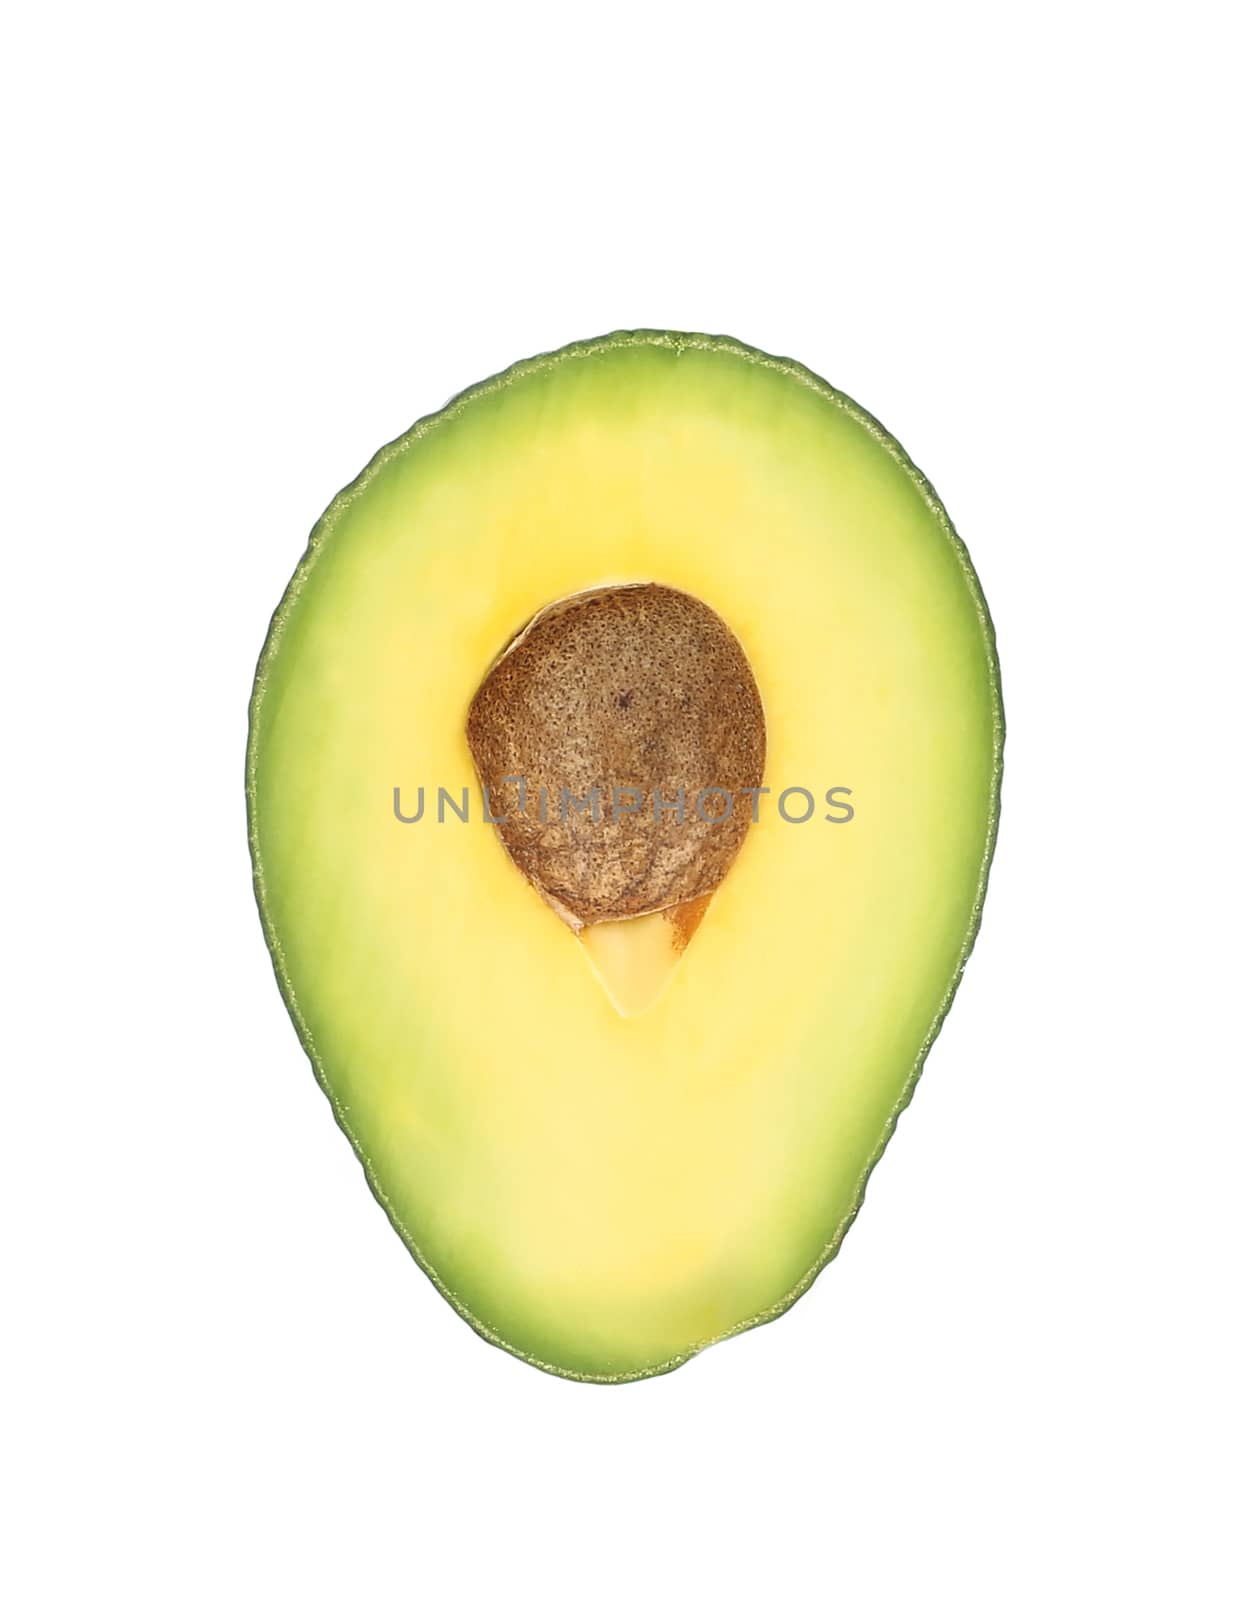 Slice of avocado. by indigolotos